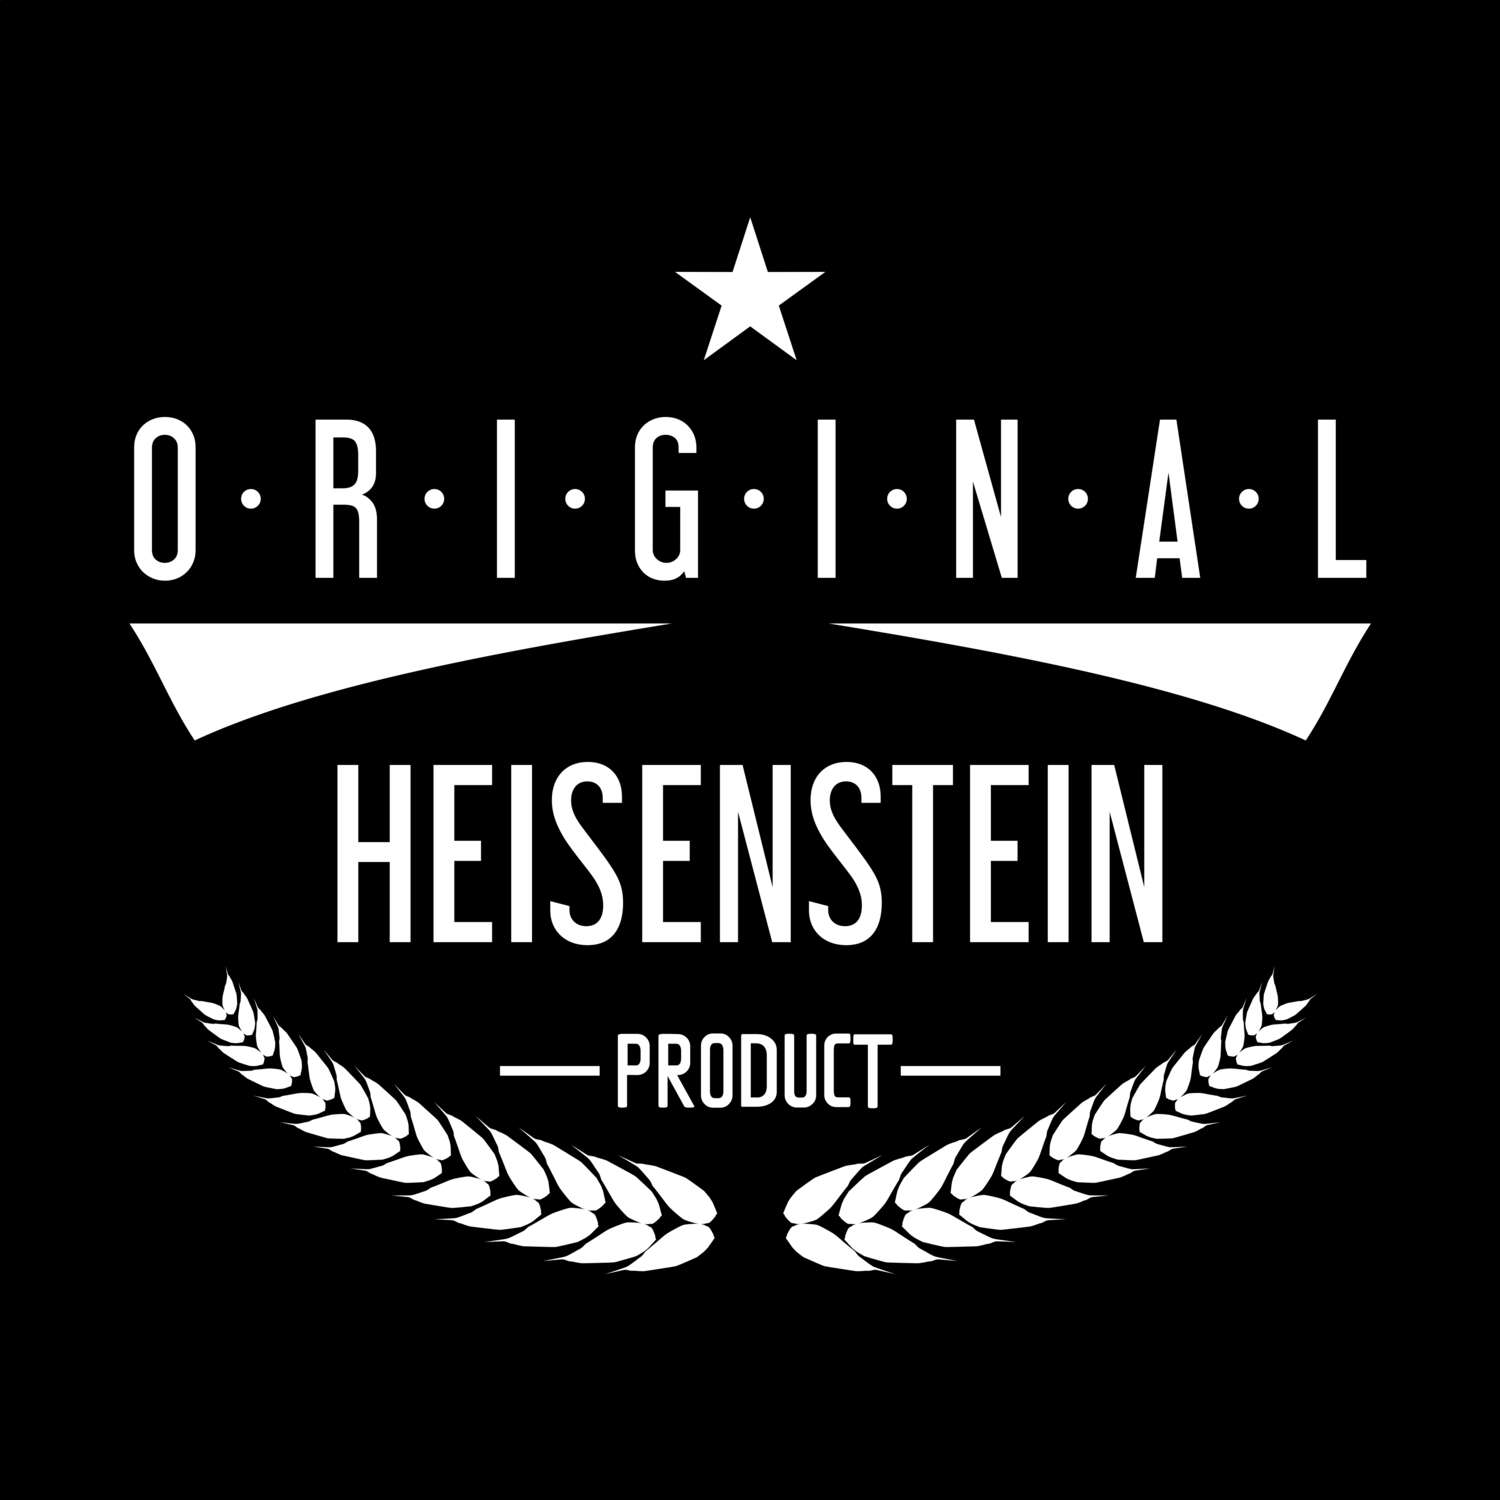 Heisenstein T-Shirt »Original Product«